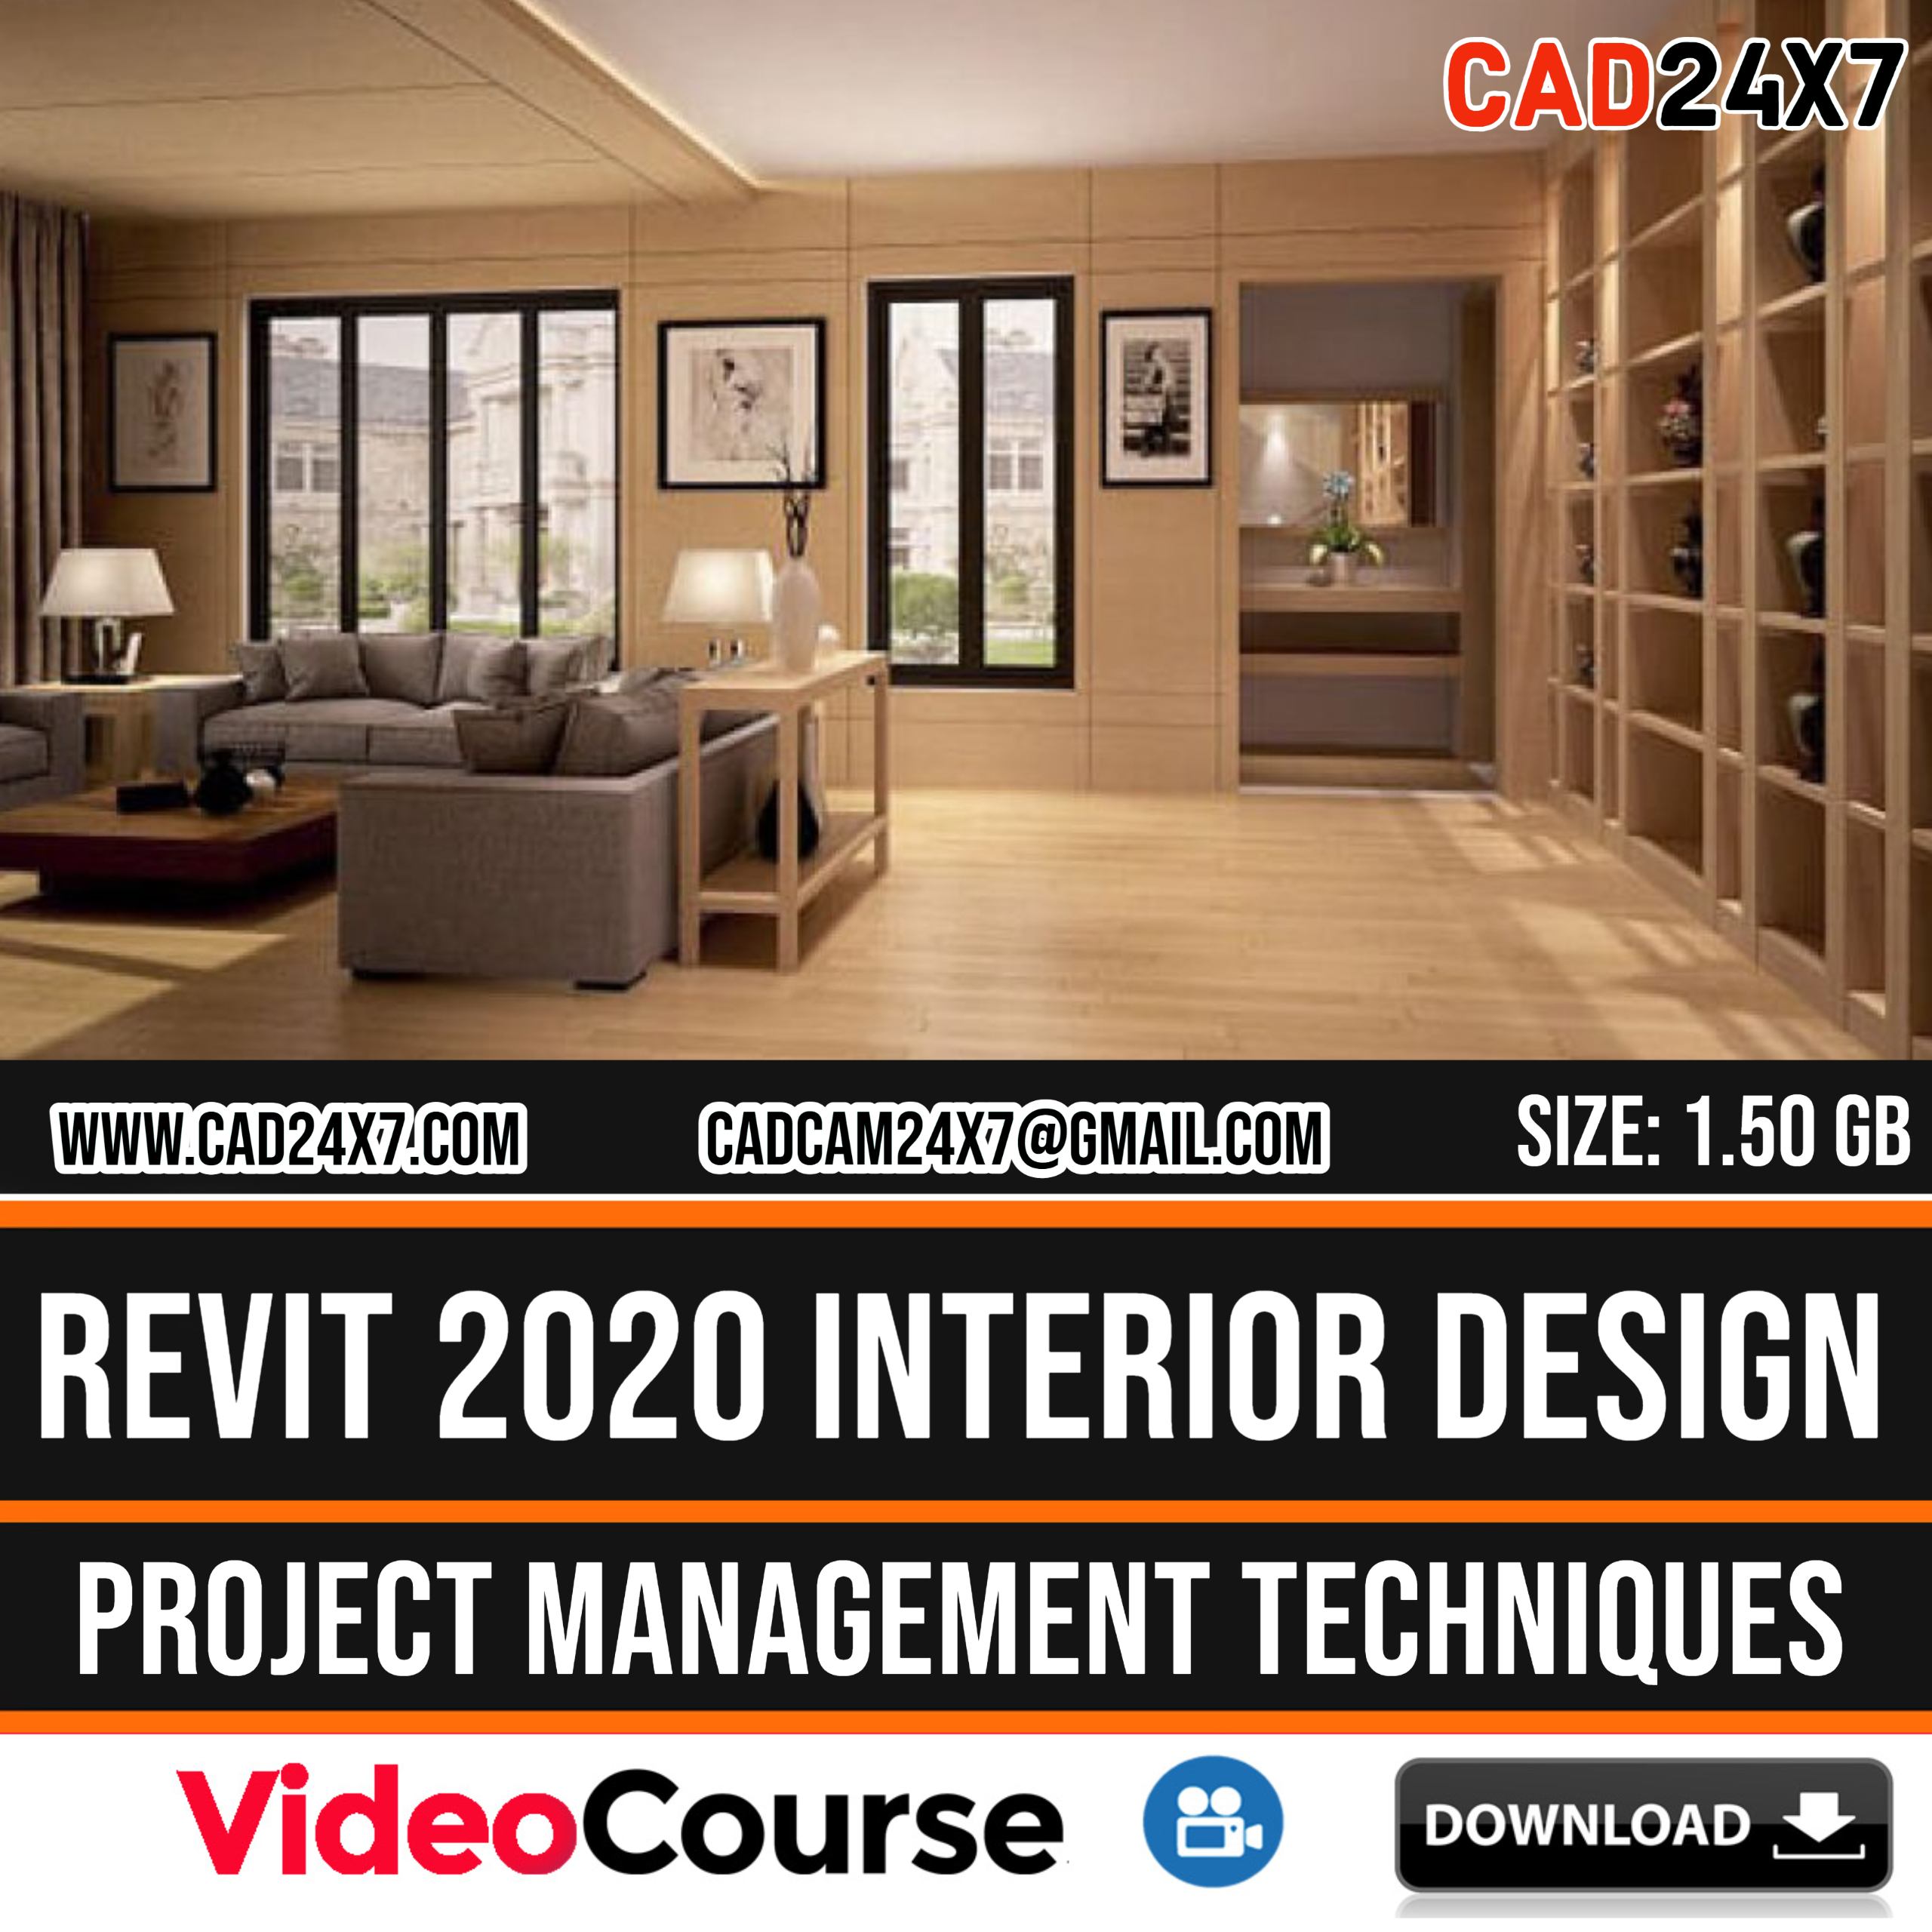 Revit 2020 Interior Design Project Management Techniques